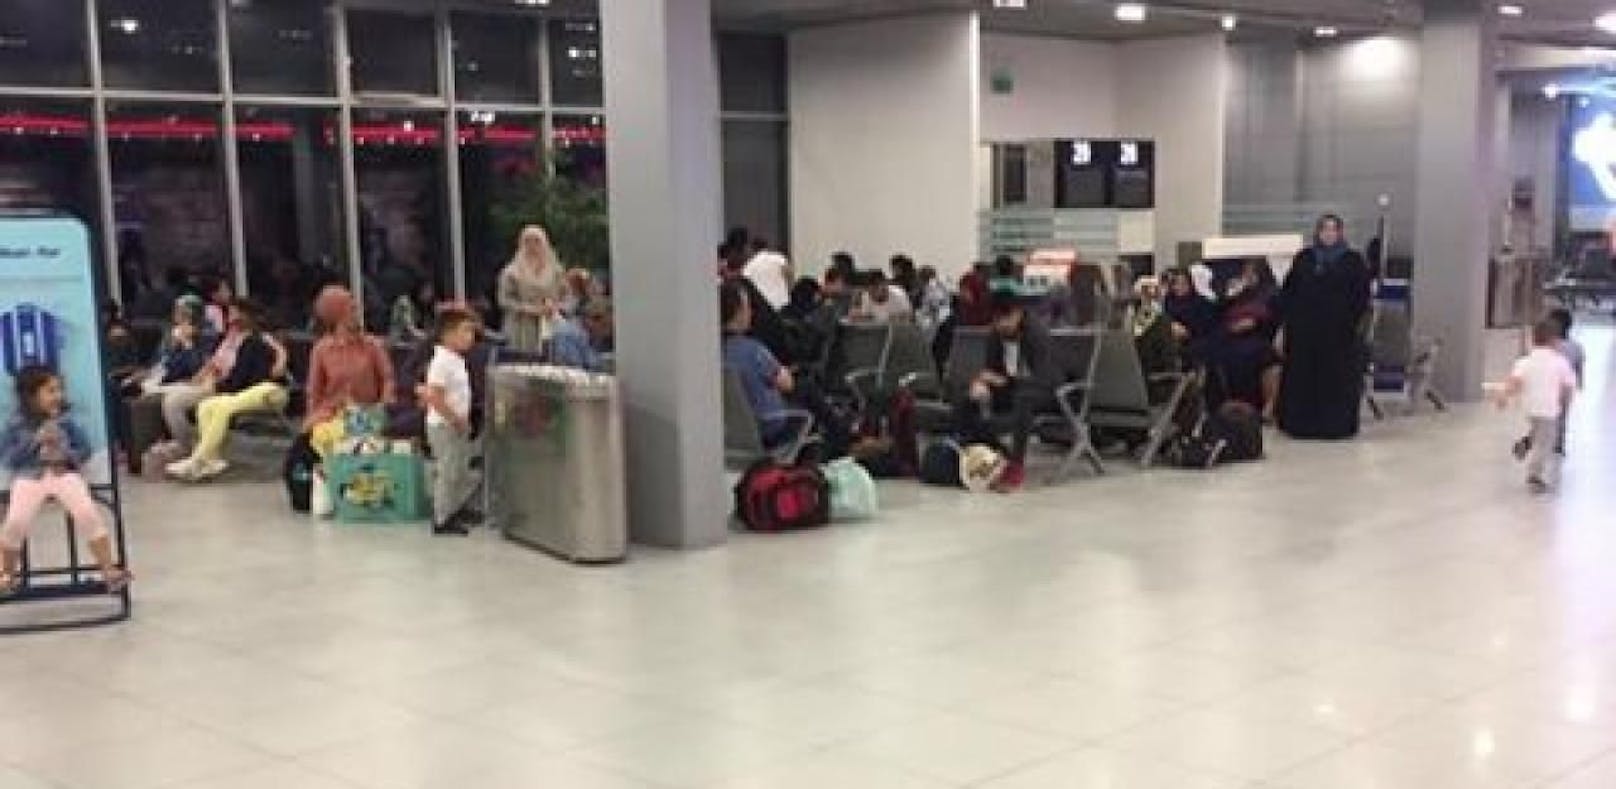 Viele Familien mit Kleinkindern waren am Flughafen Bukarest gestrandet - ohne Unterstützung der Fluglinie, wie gegenüber &quot;Heute&quot; geschildert wurde.